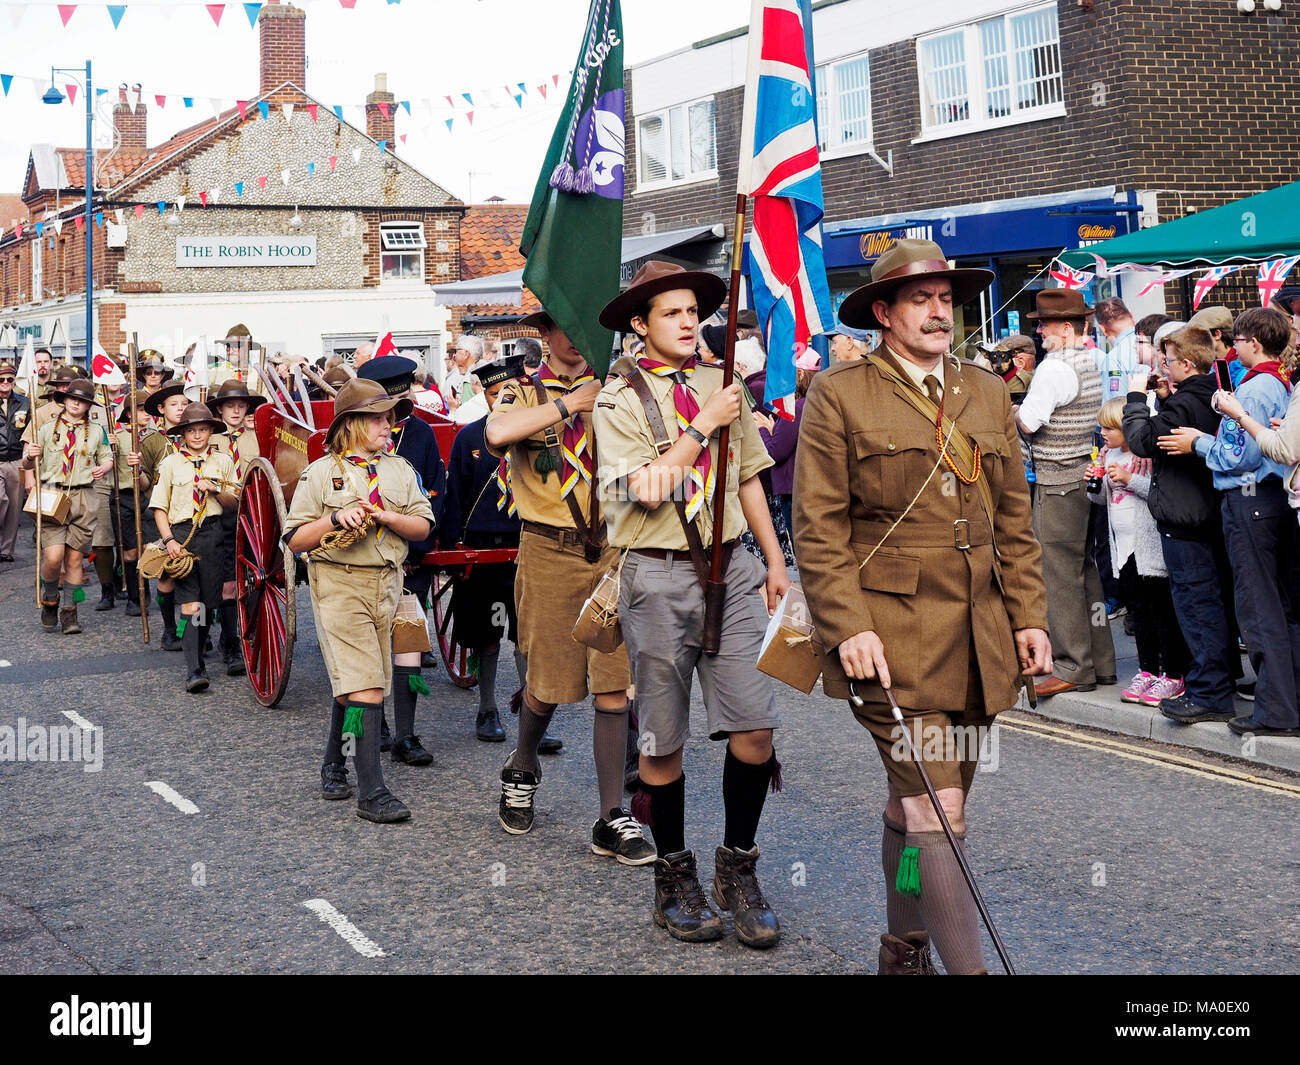 Une ambiance de carnaval dans les années 1940 week-end à Sheringham, Sept 2017, partie d'un événement organisé par le North Norfolk de fer. La revue de la victoire. Banque D'Images